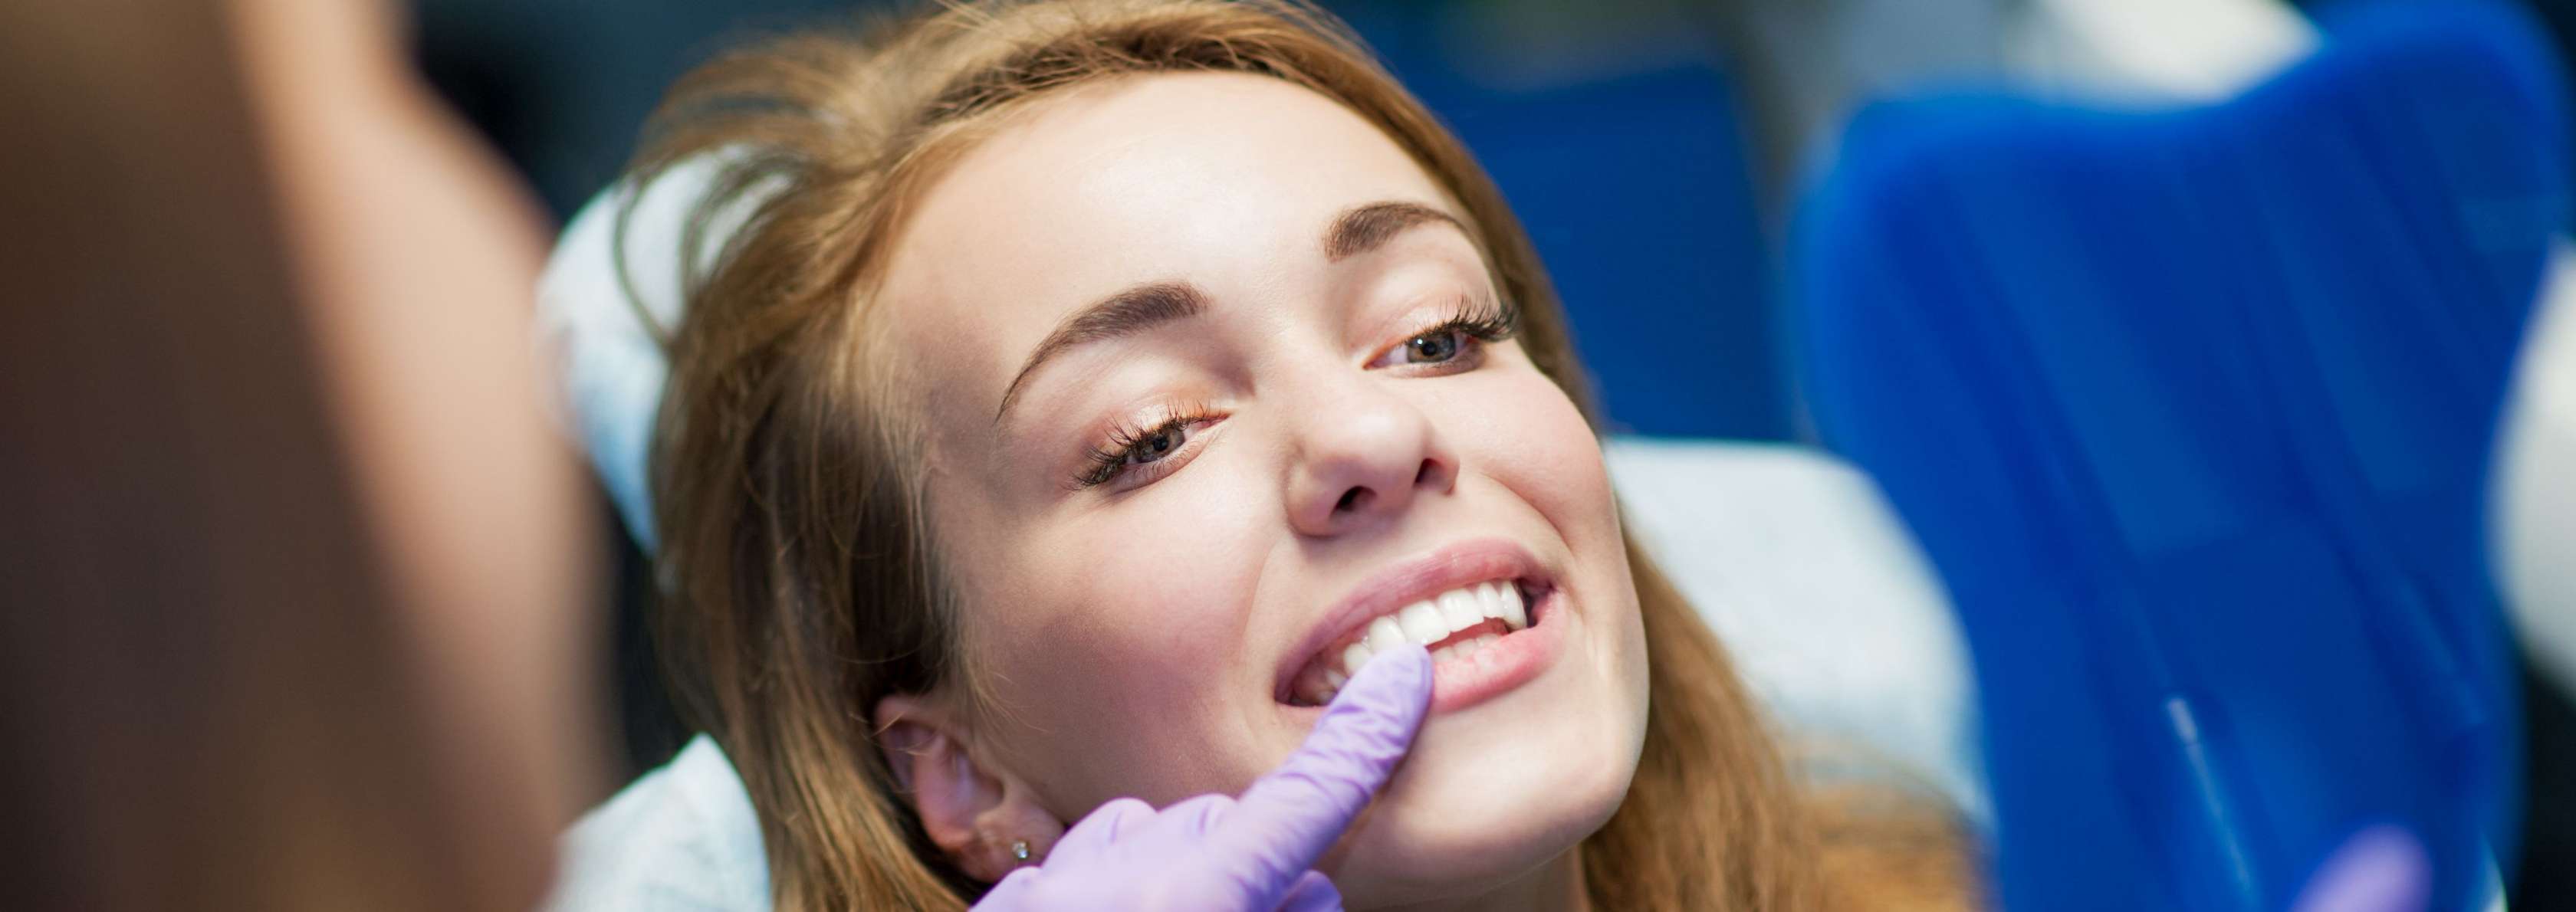 Zahnarztangst: Was tun bei Dentalphobie? Alle Infos & Tipps